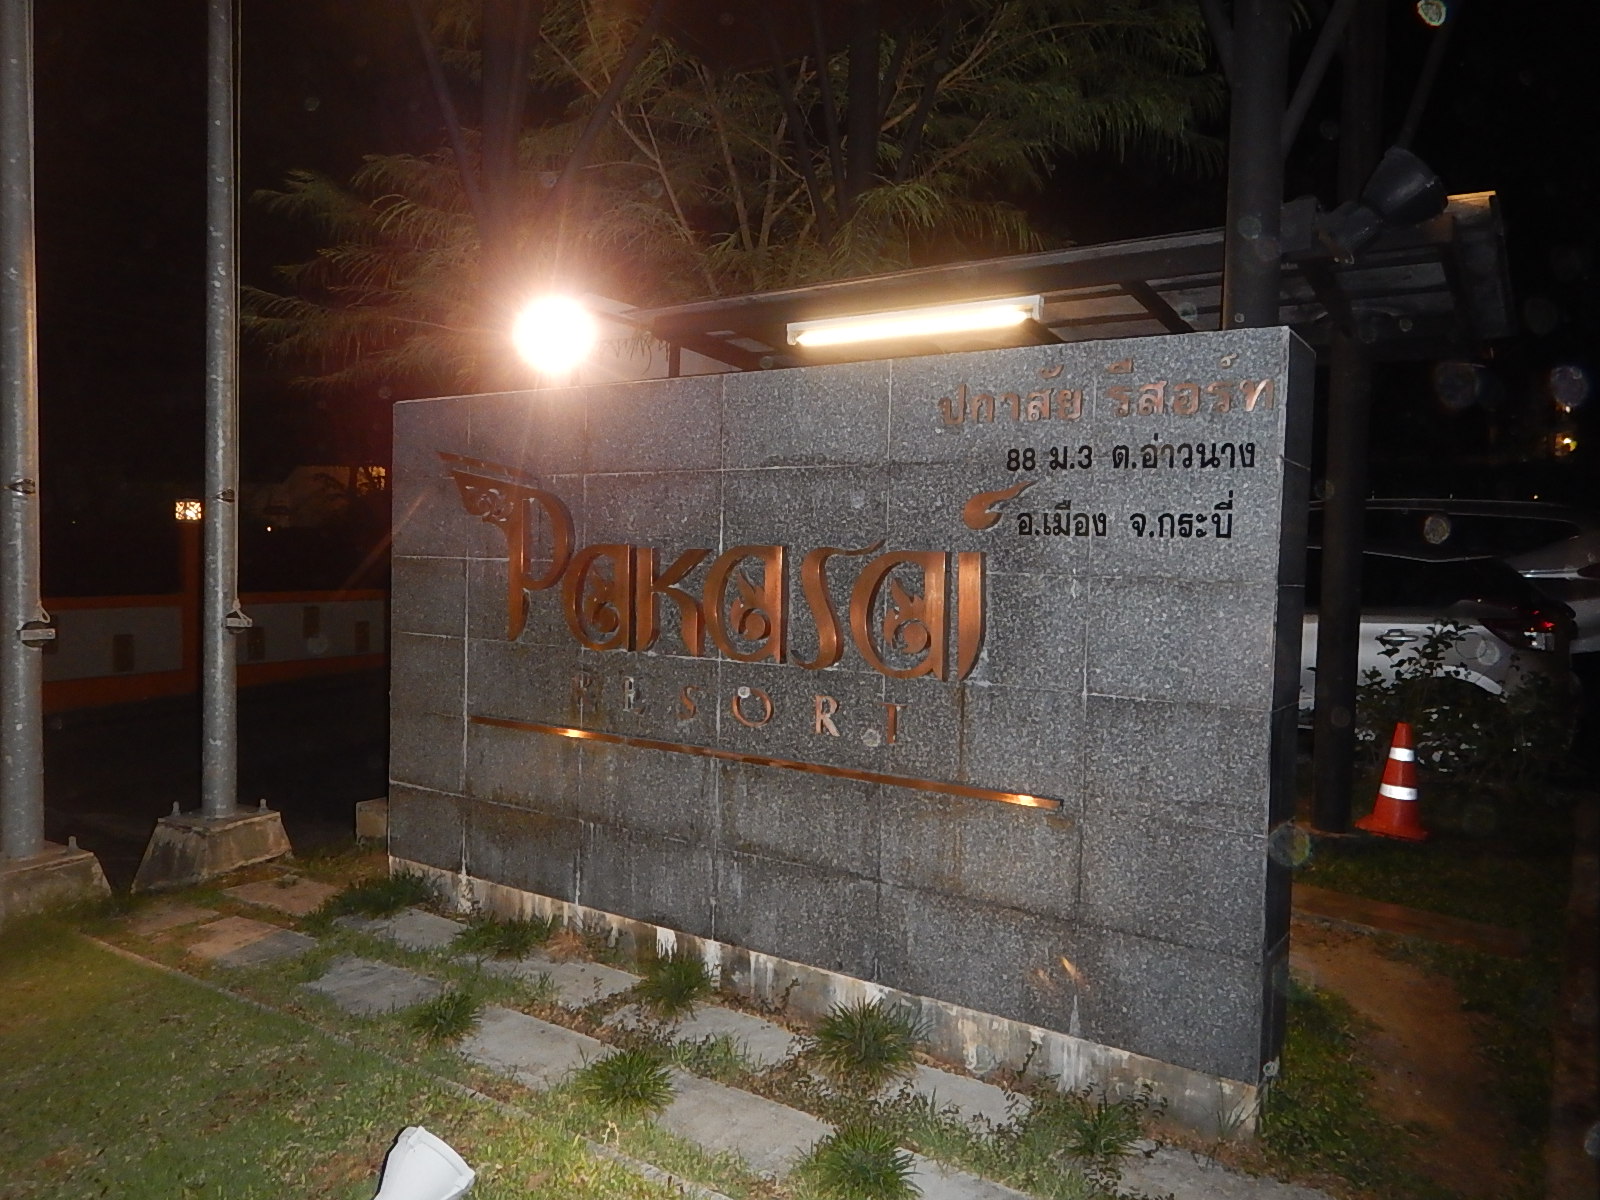 PAKASAI Resort